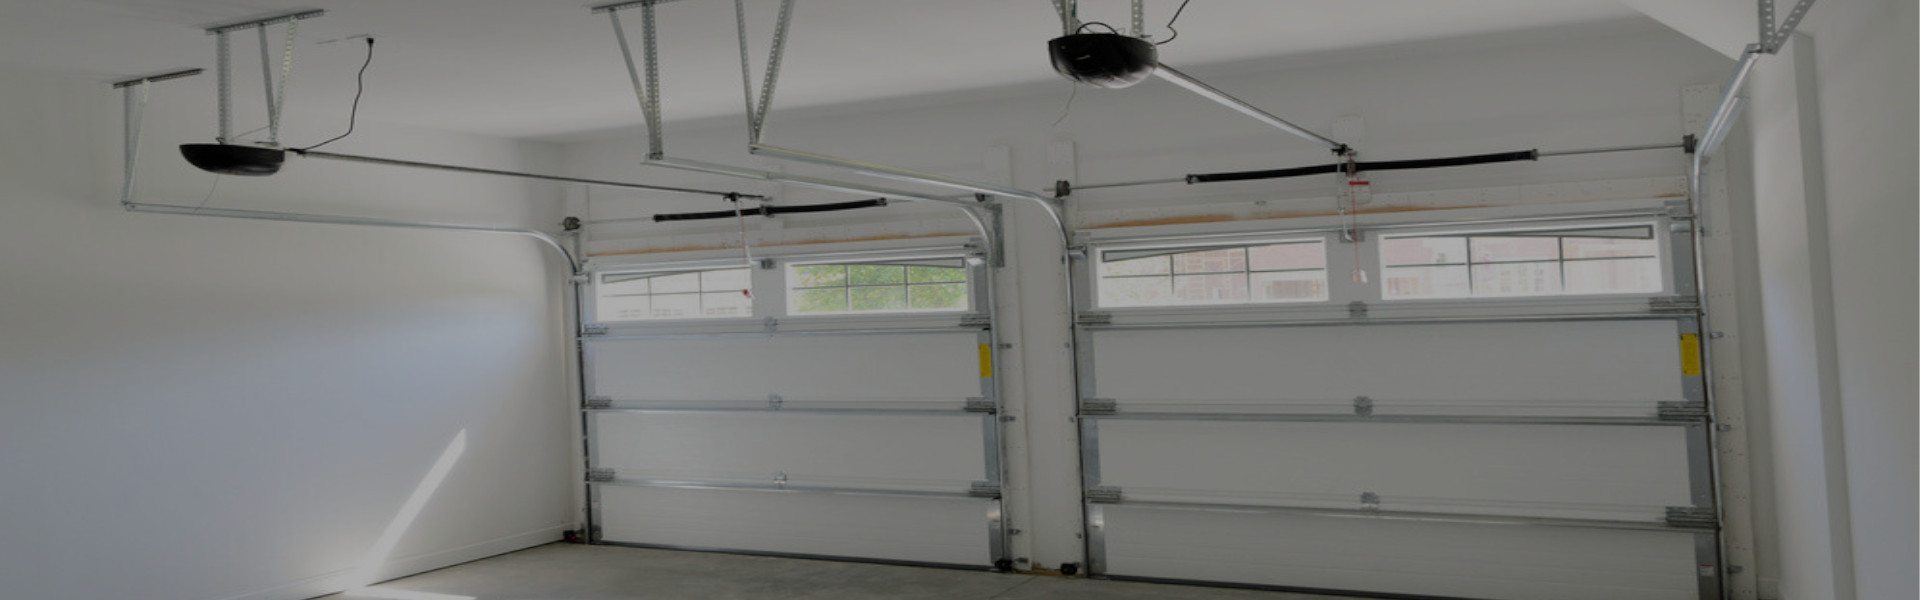 Slider Garage Door Repair, Glaziers in Hampton, KT8